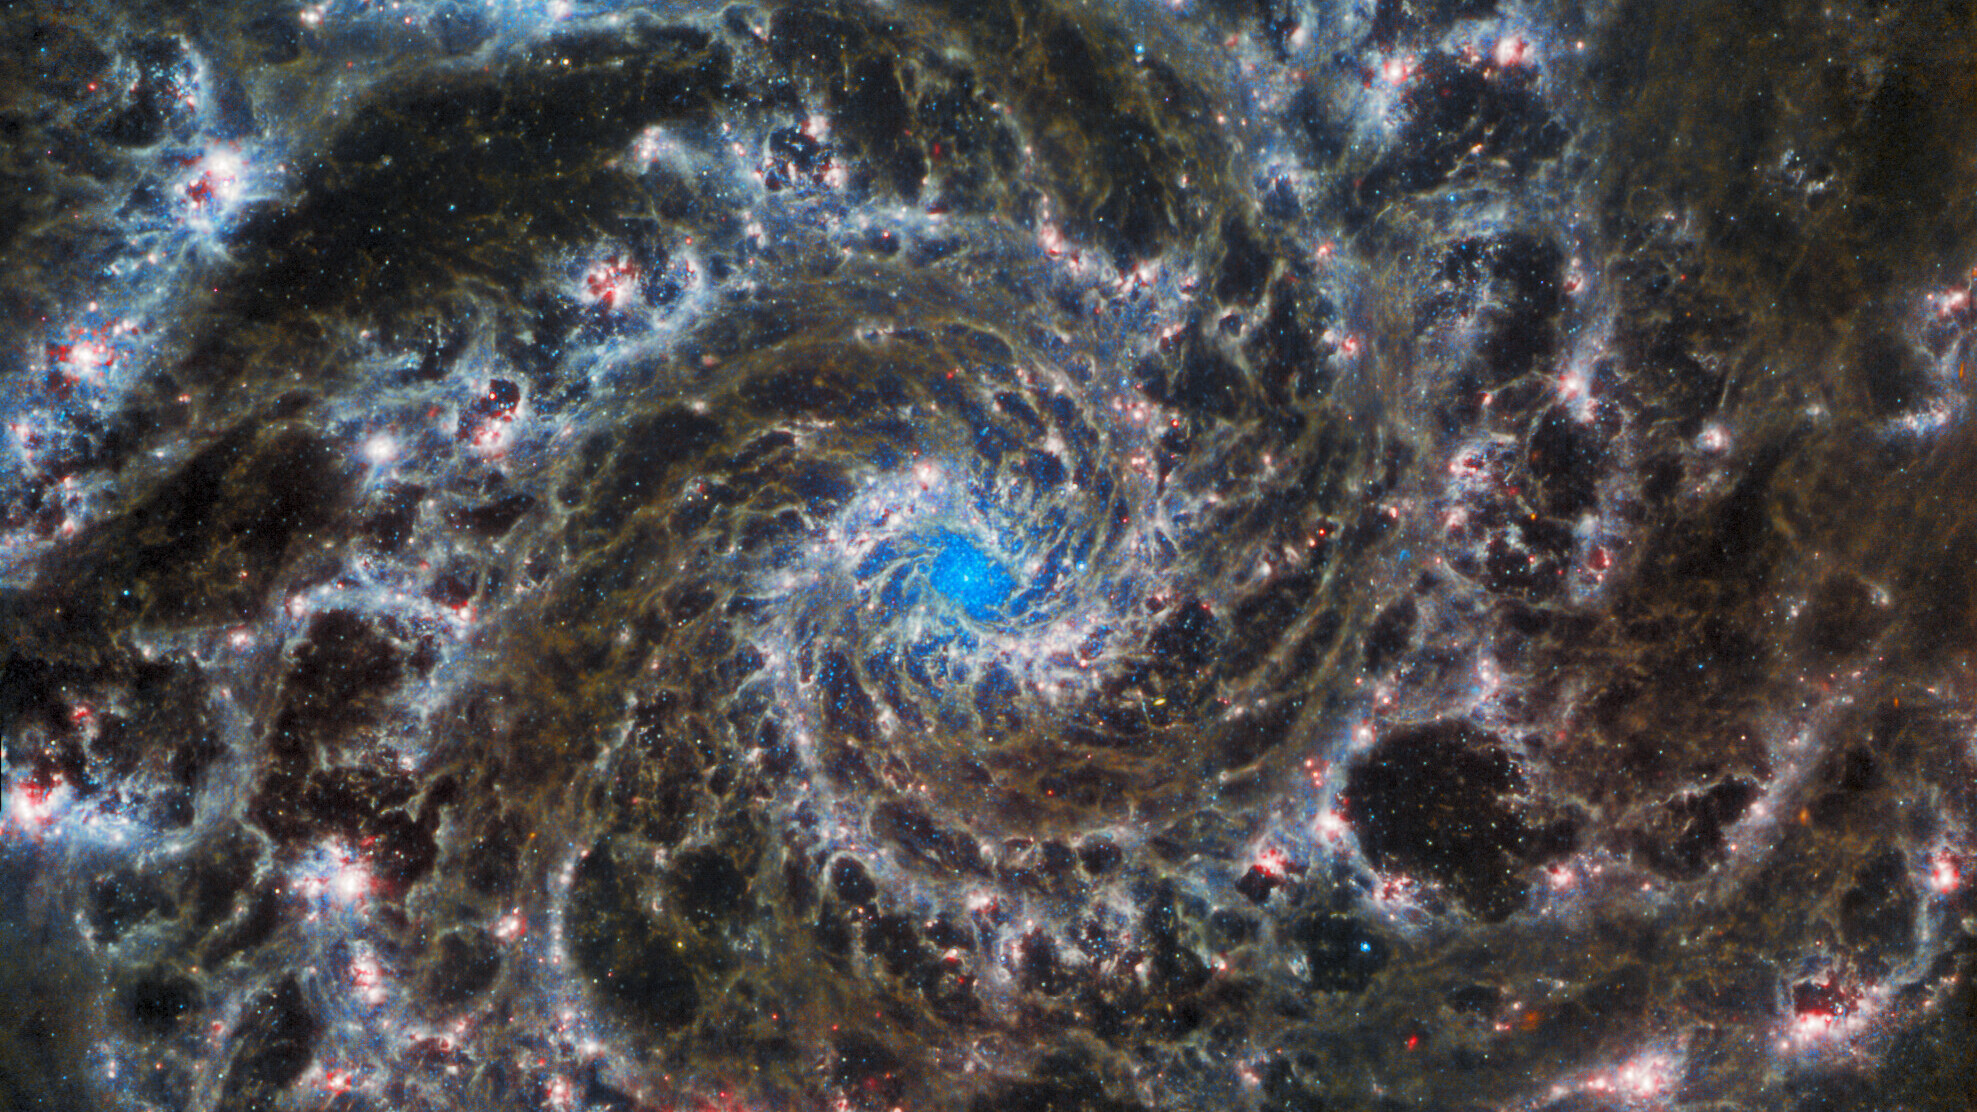 Heart of the Phantom Galaxy - همکاری تلسکوپ فضایی هابل و جیمز وب برای به نمایش گذاری تصاویر خیره کننده از کهکشان فانتوم